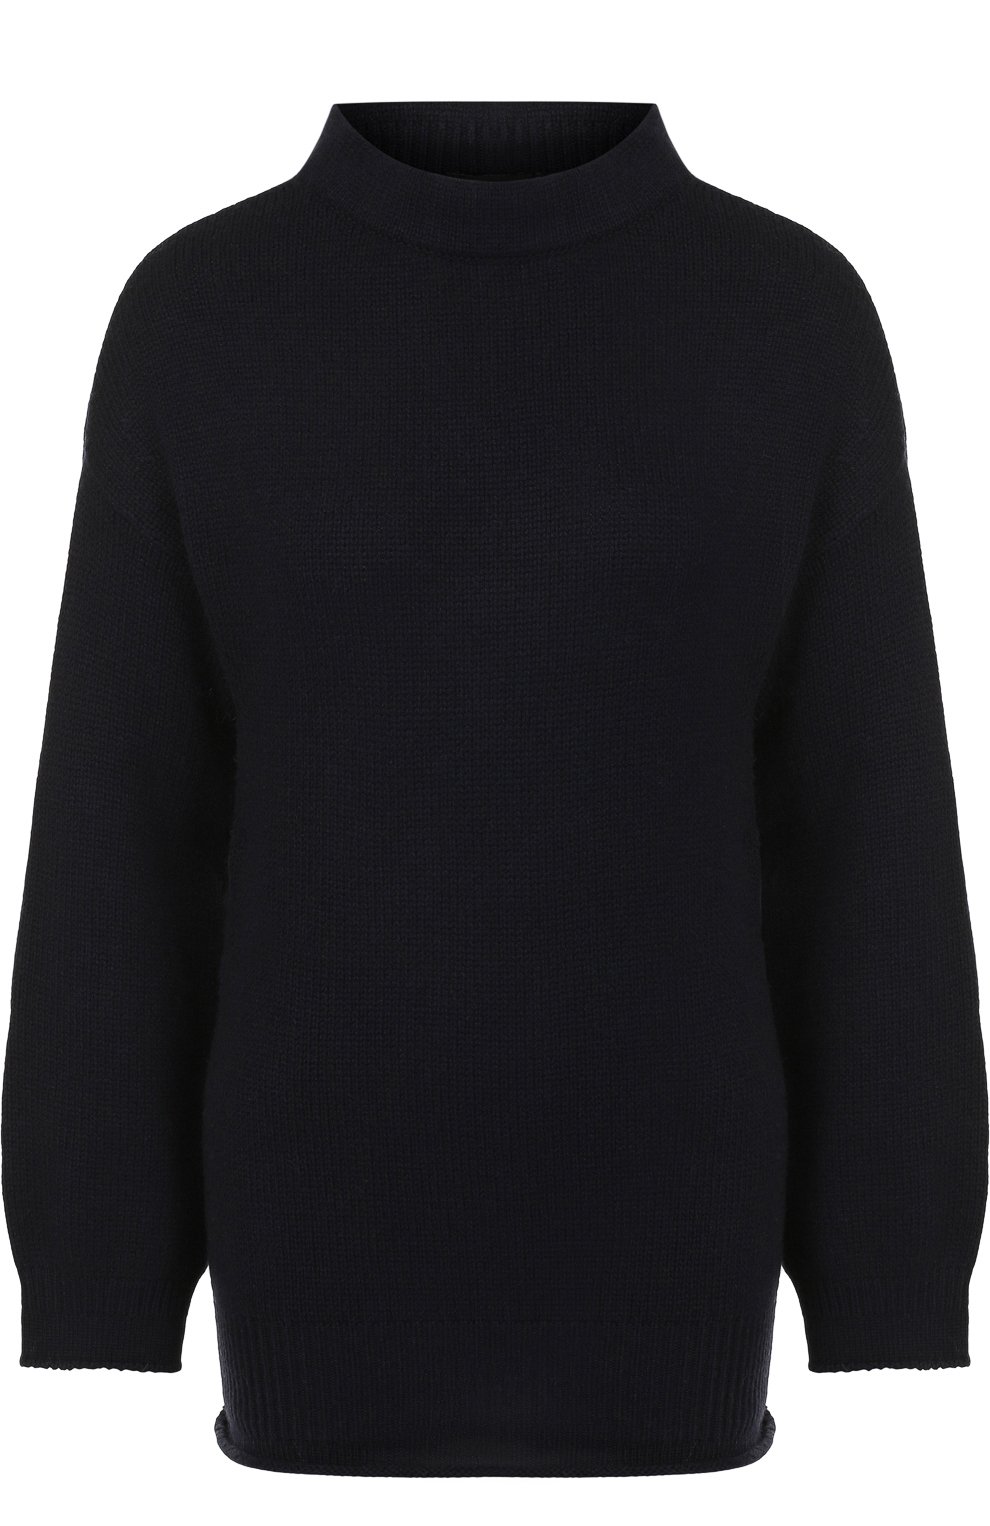 Трикотаж Giorgio Armani, Кашемировый пуловер с воротником-стойкой Giorgio Armani, Италия, Чёрный, Кашемир: 100%;, 4260563  - купить